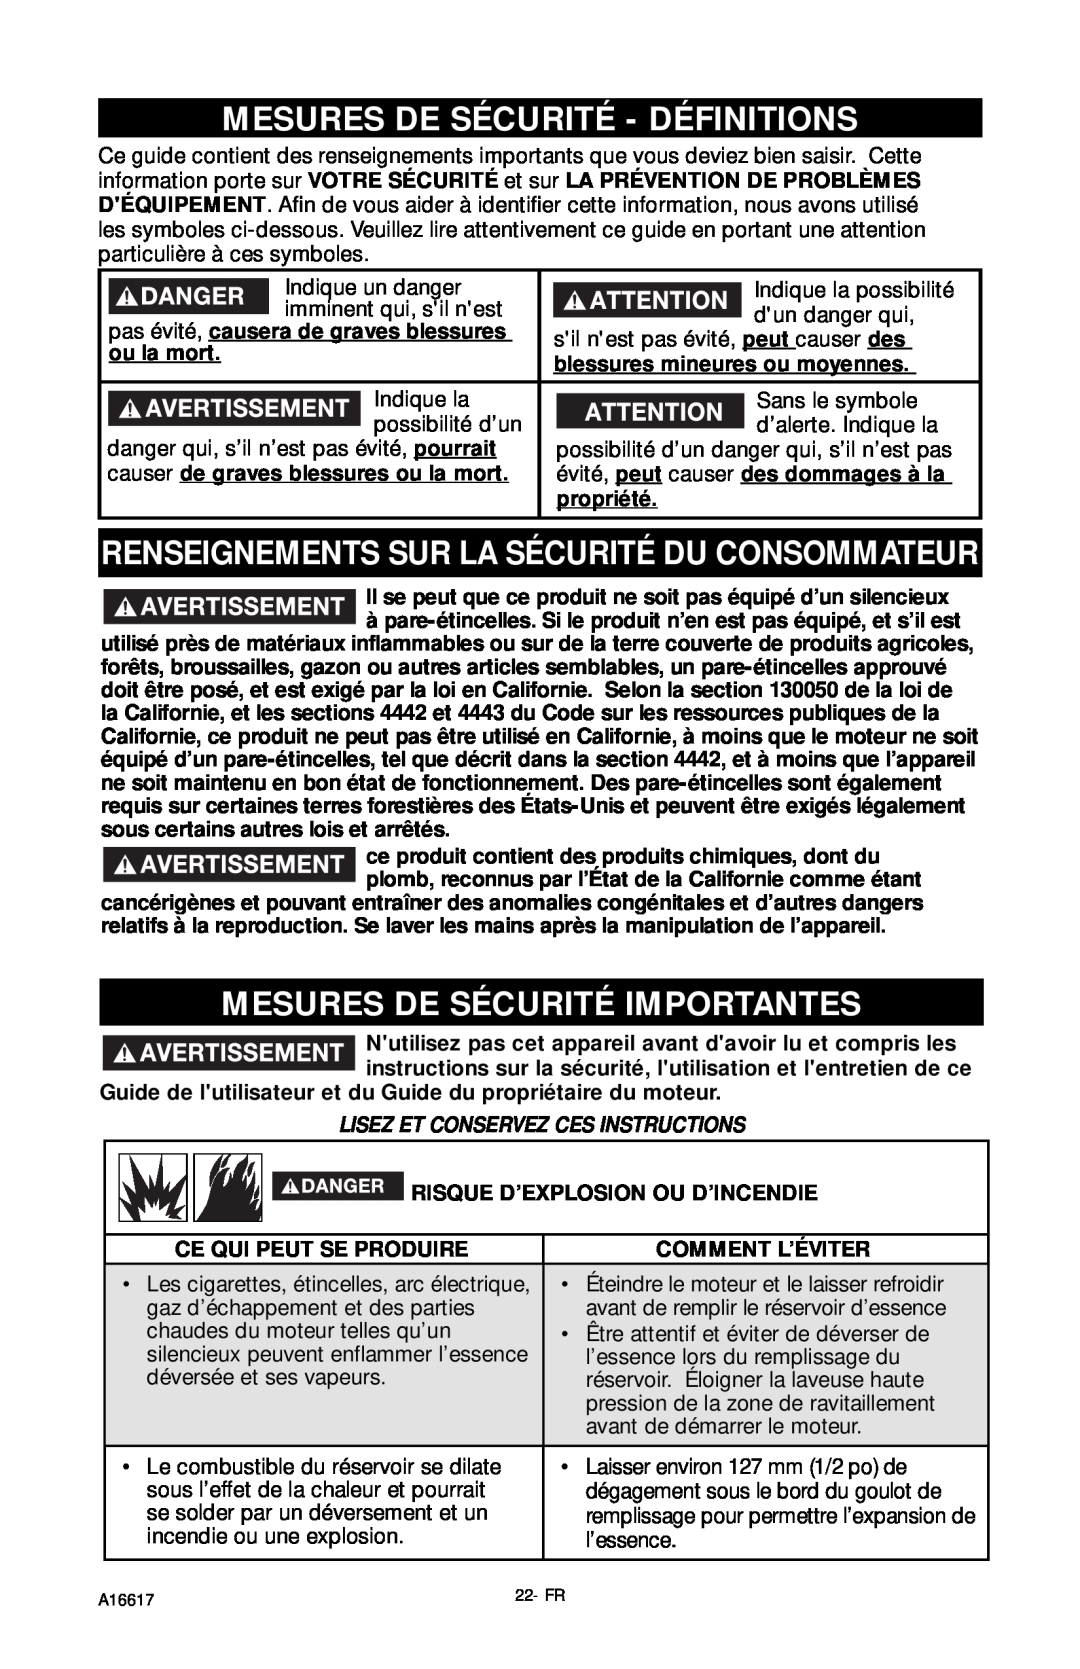 DeVillbiss Air Power Company XR2625 Mesures De Sécurité - Définitions, Renseignements Sur La Sécurité Du Consommateur 